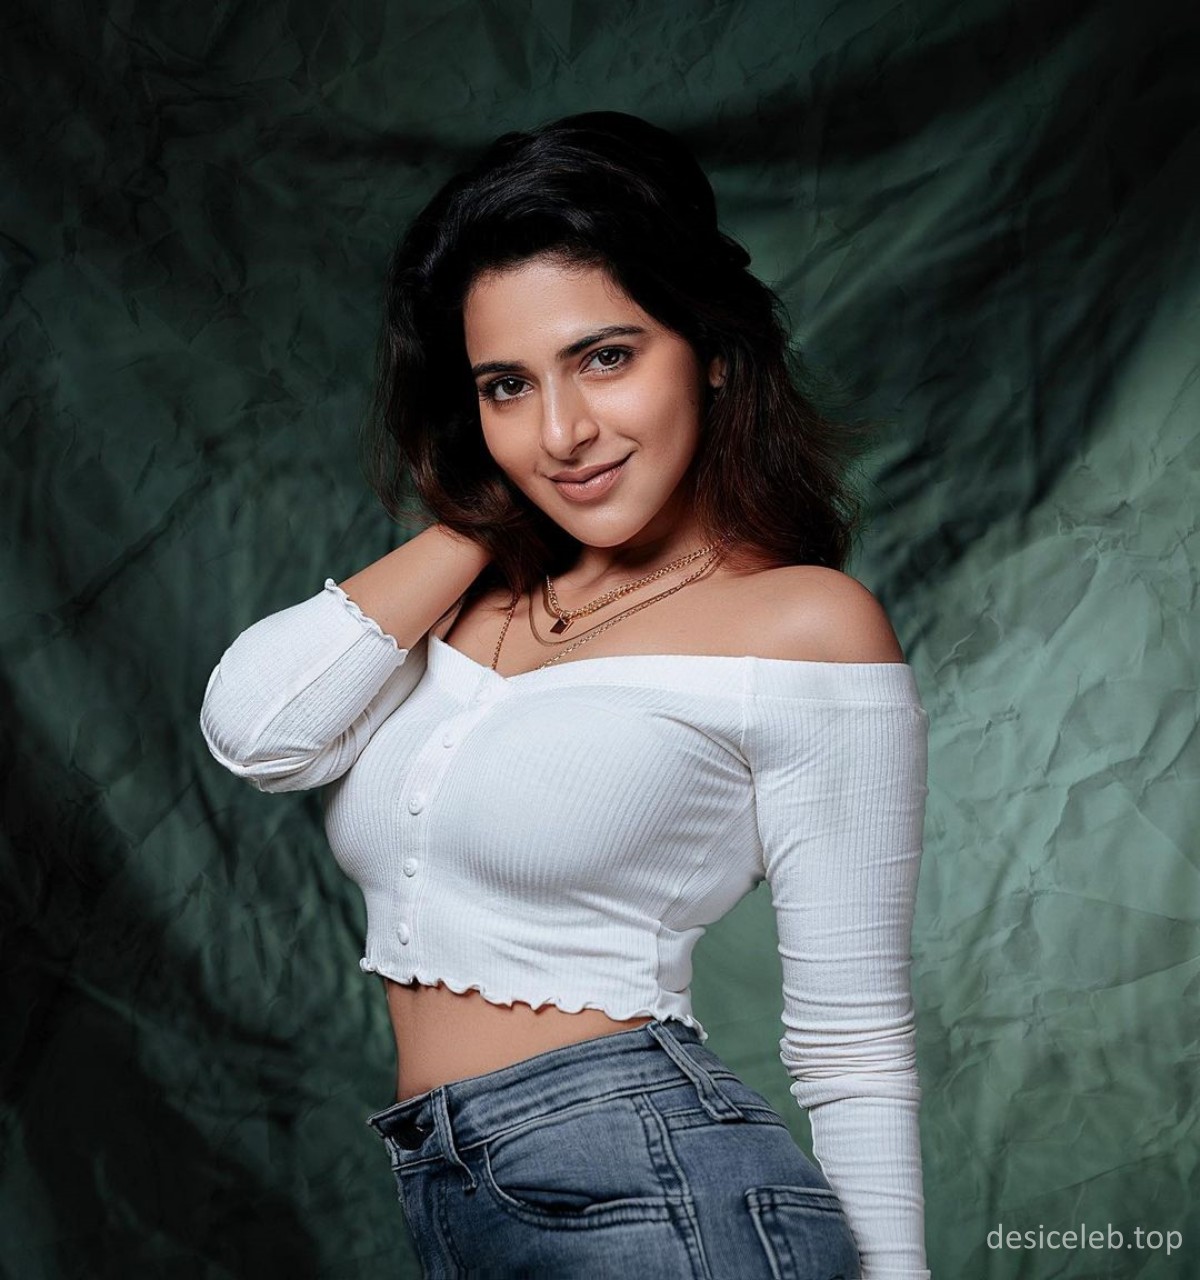 Tamil Actress Iswarya Menon Big Boobs Pics collections, Iswarya Menon big melons, Iswarya Menon boobs, Iswarya Menon cleavage